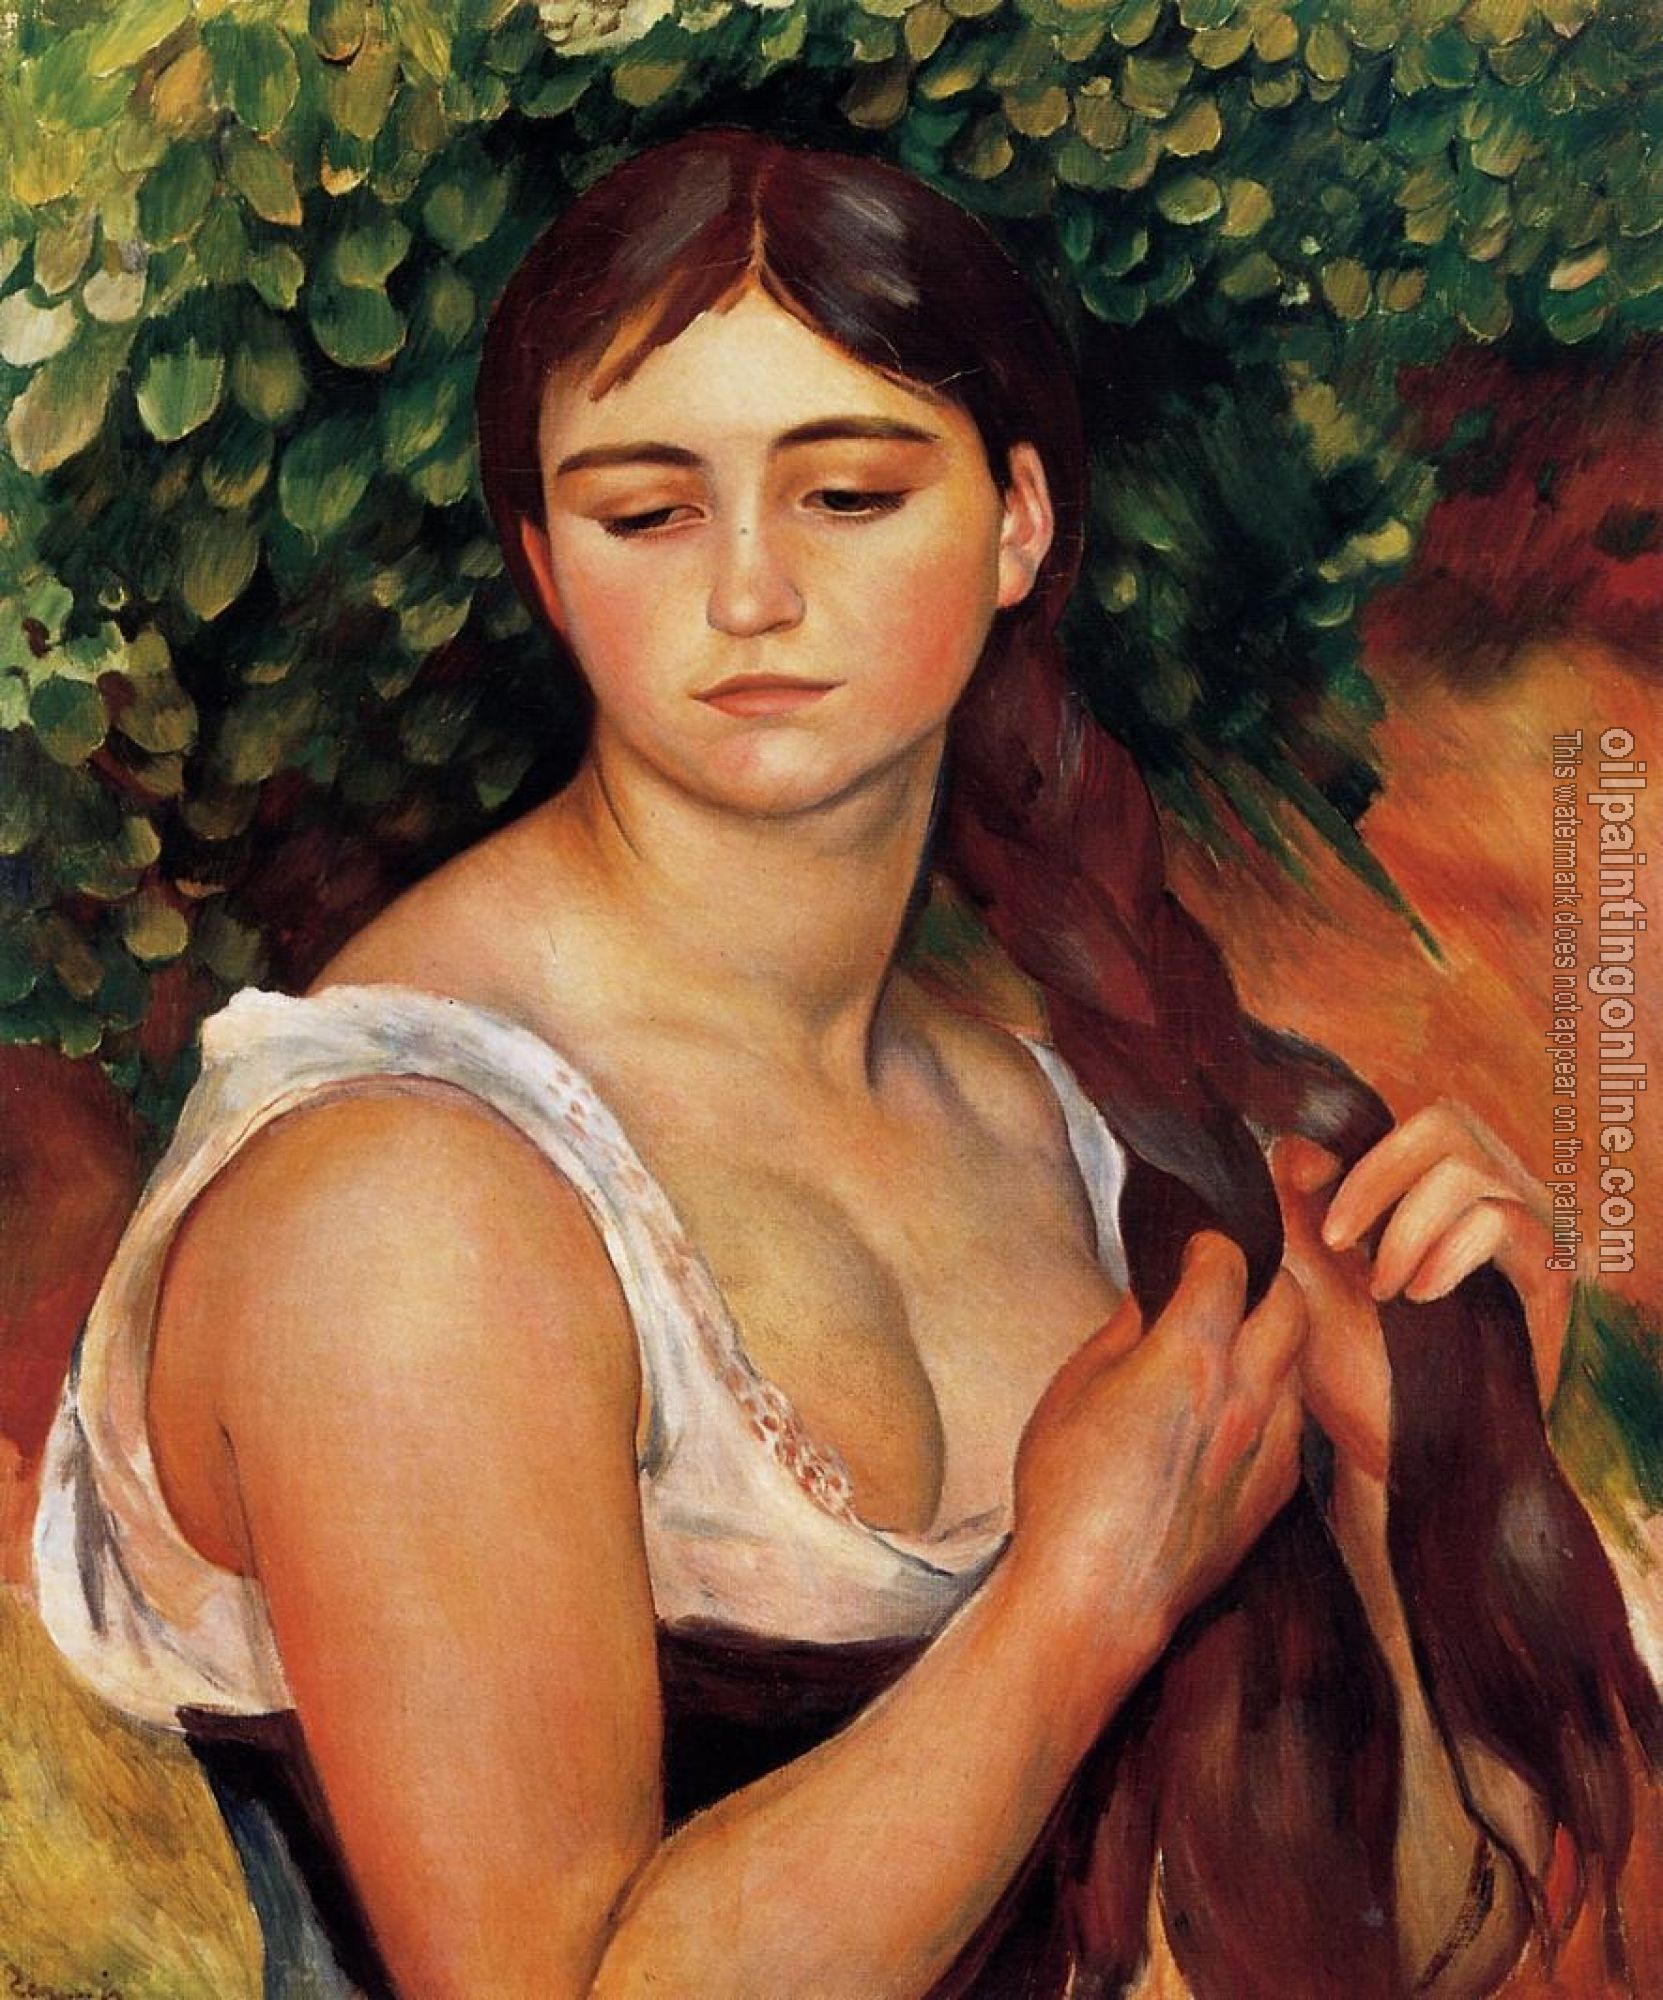 Renoir, Pierre Auguste - The Braid, Suzanne Valadon